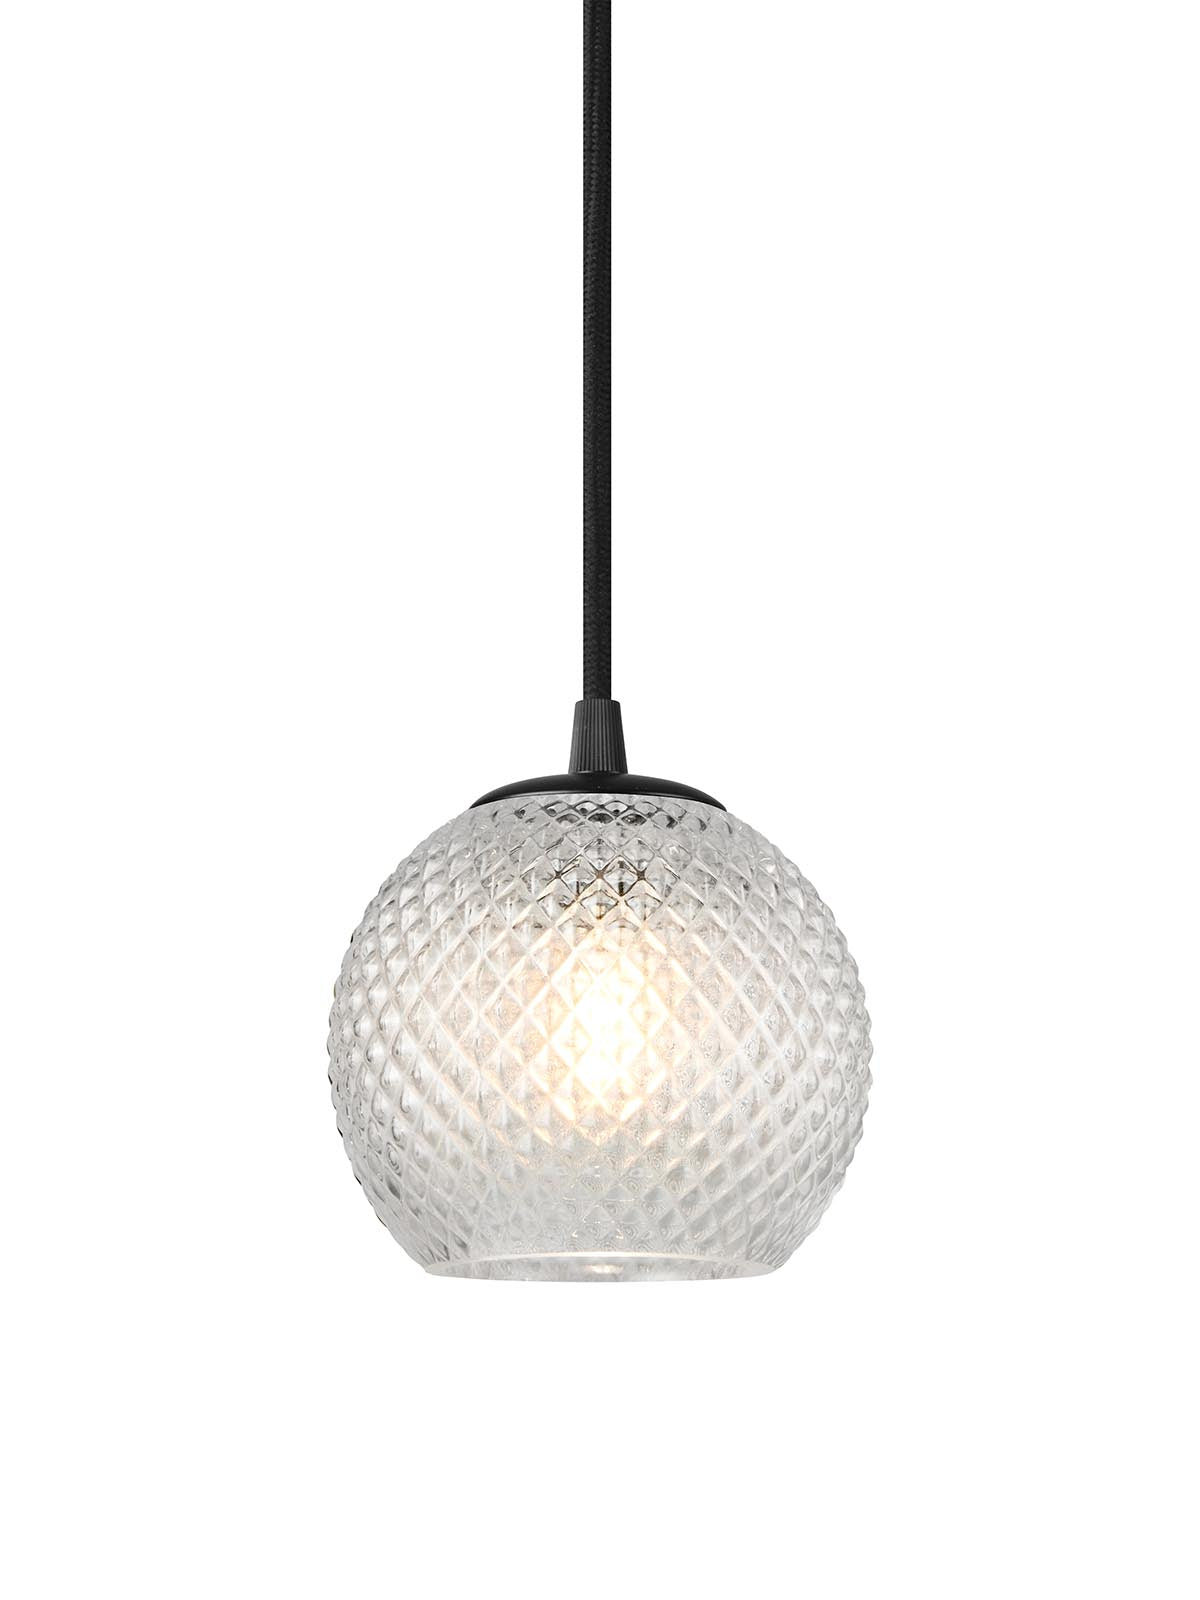 Halo Design - Nobb ball small amber Ø12 fra Lampeexperten